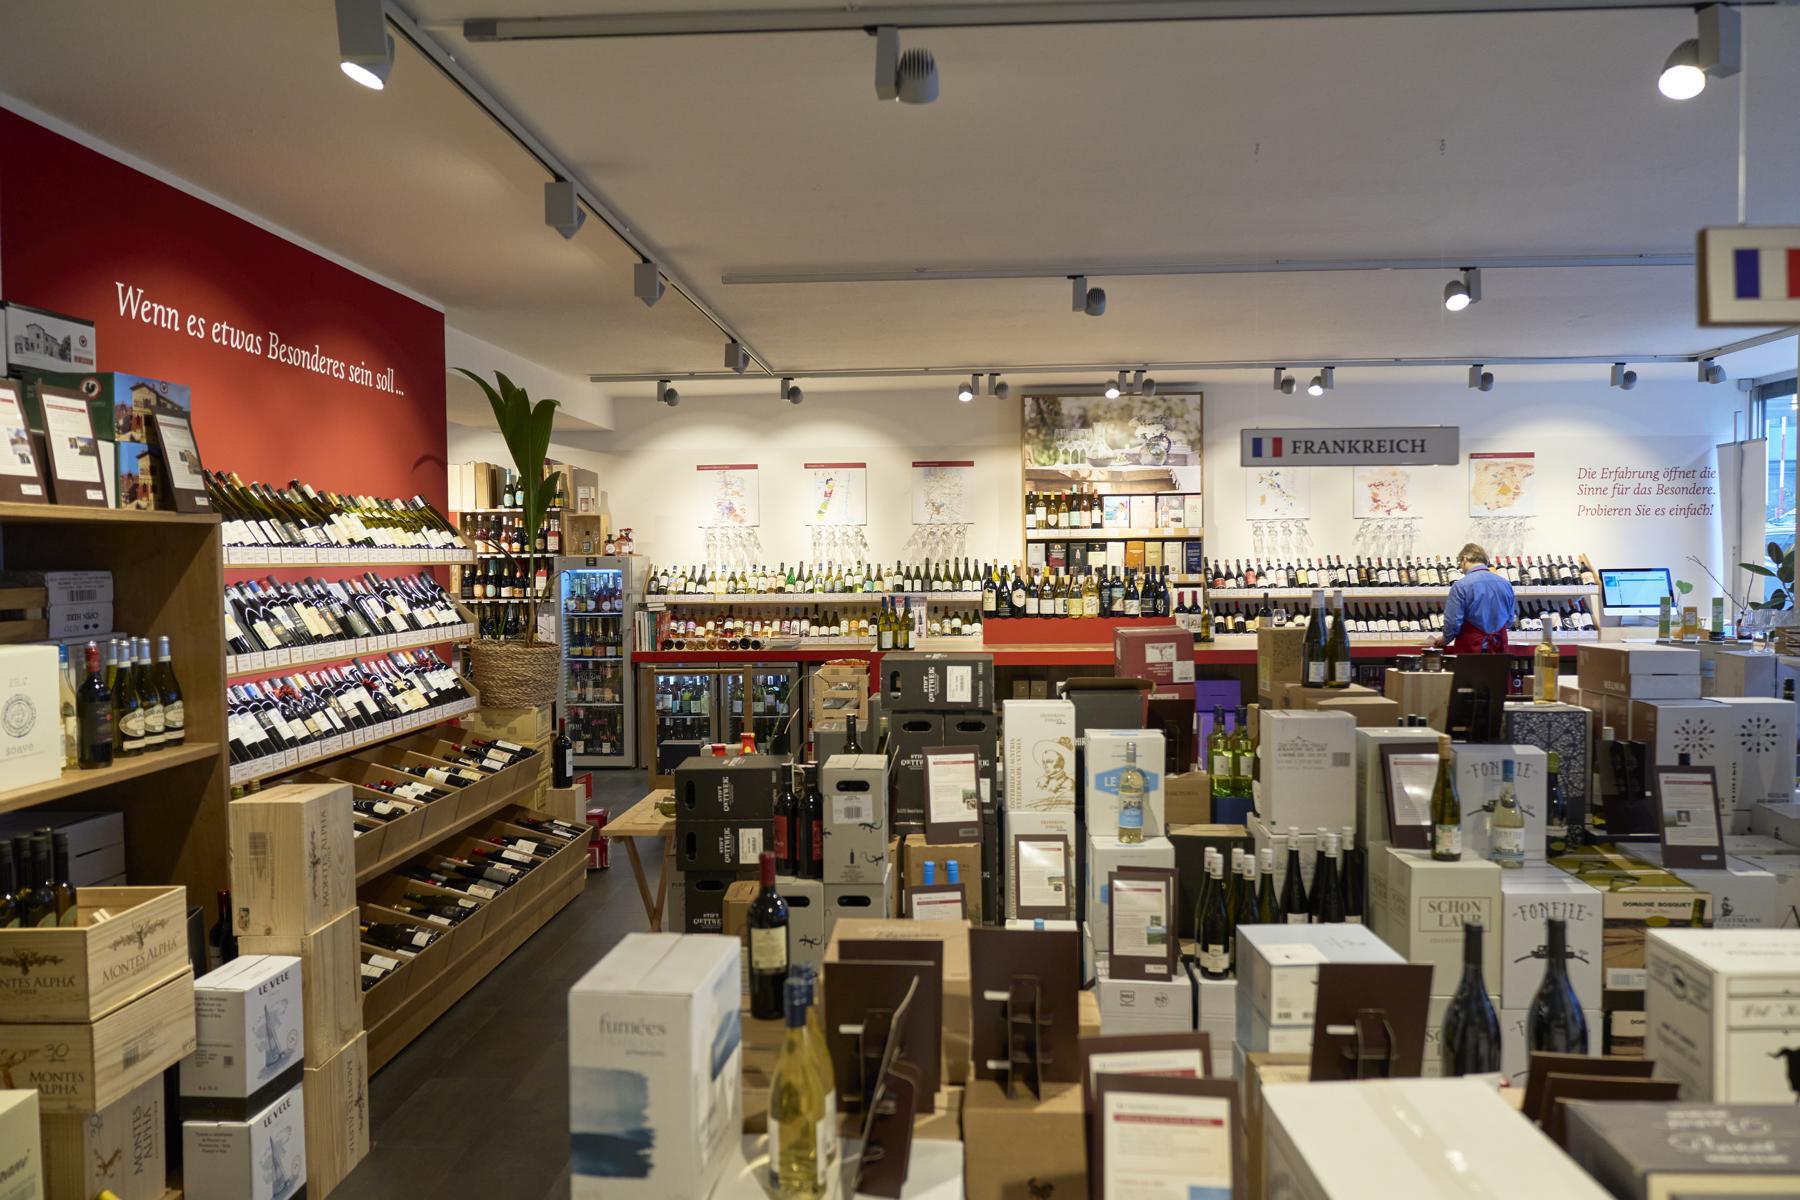 Bilder Jacques’ Wein-Depot Stuttgart